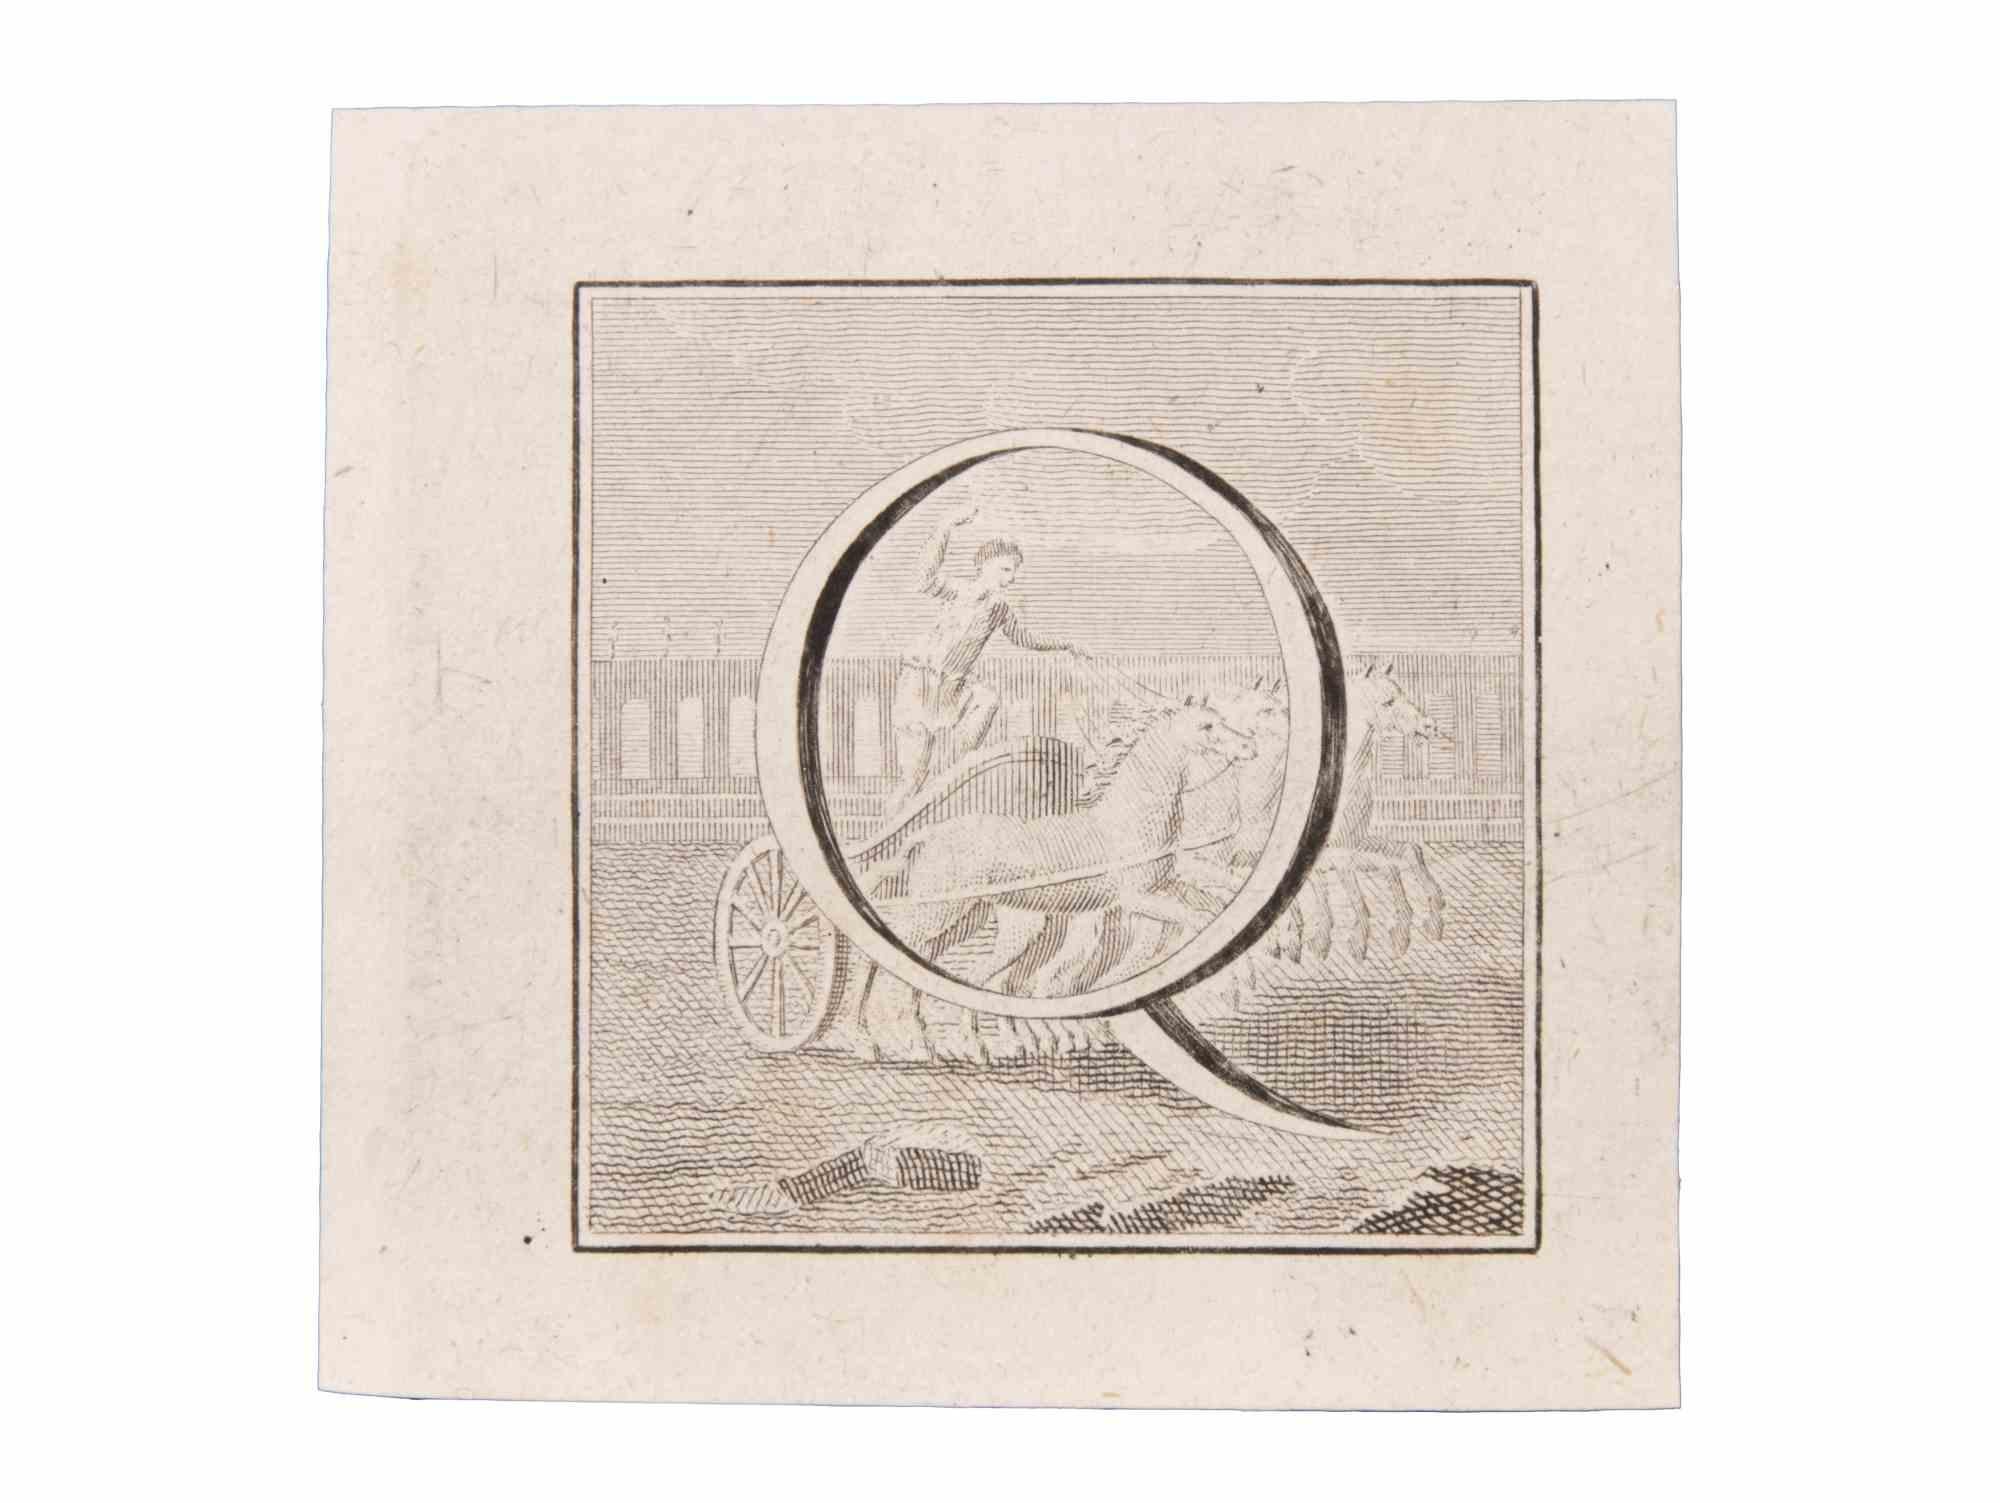 Lettre Q est une gravure réalisée par Luigi Vanvitelli du 18ème siècle.

La gravure appartient à la suite d'estampes "Antiquités d'Herculanum exposées" (titre original : "Le Antichità di Ercolano Esposte"), un volume de huit gravures des découvertes